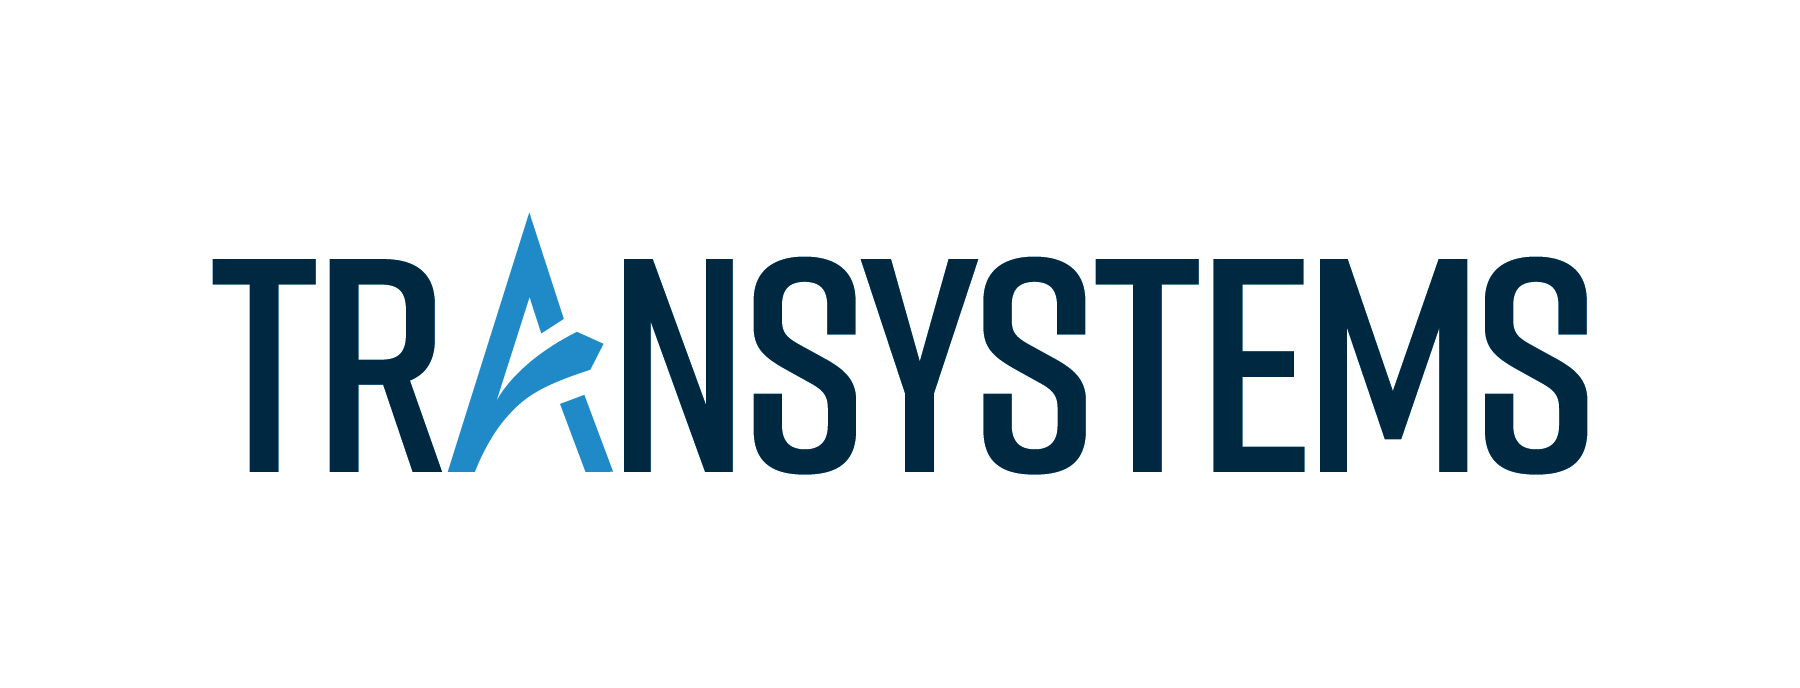 transystems logo